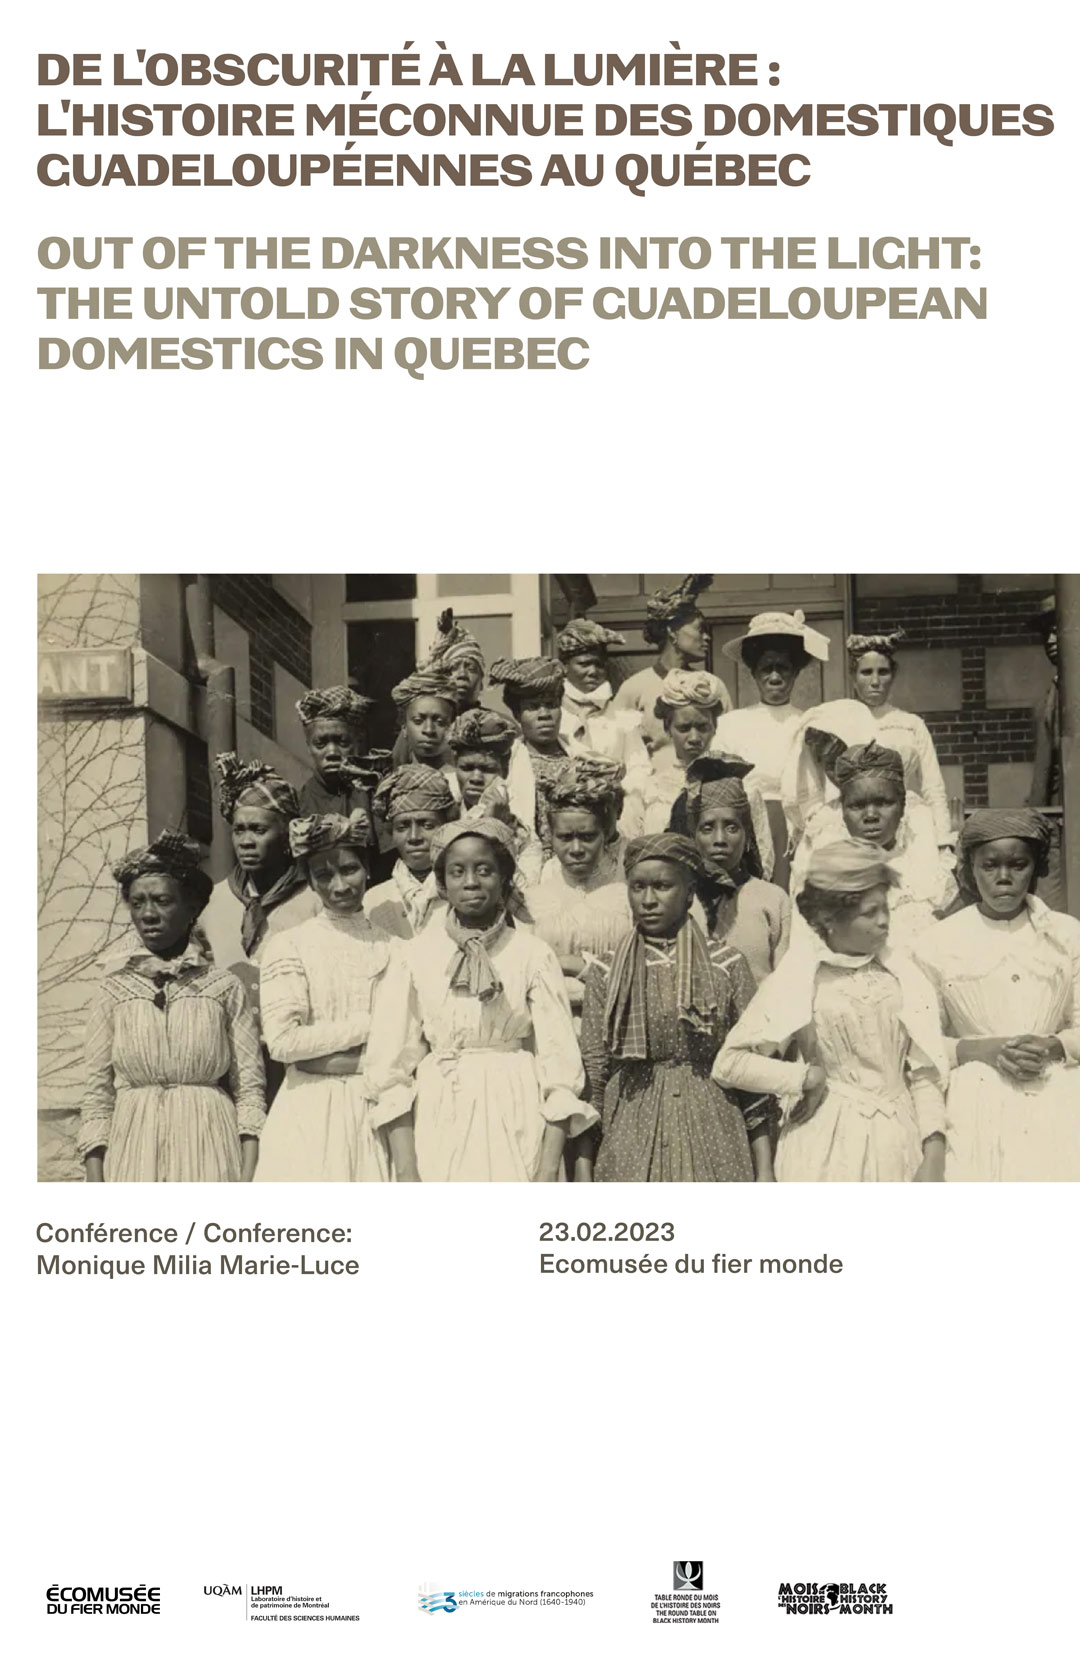 De l'obscurité à la lumière : l'histoire méconnue des domestiques guadeloupéennes au Québec